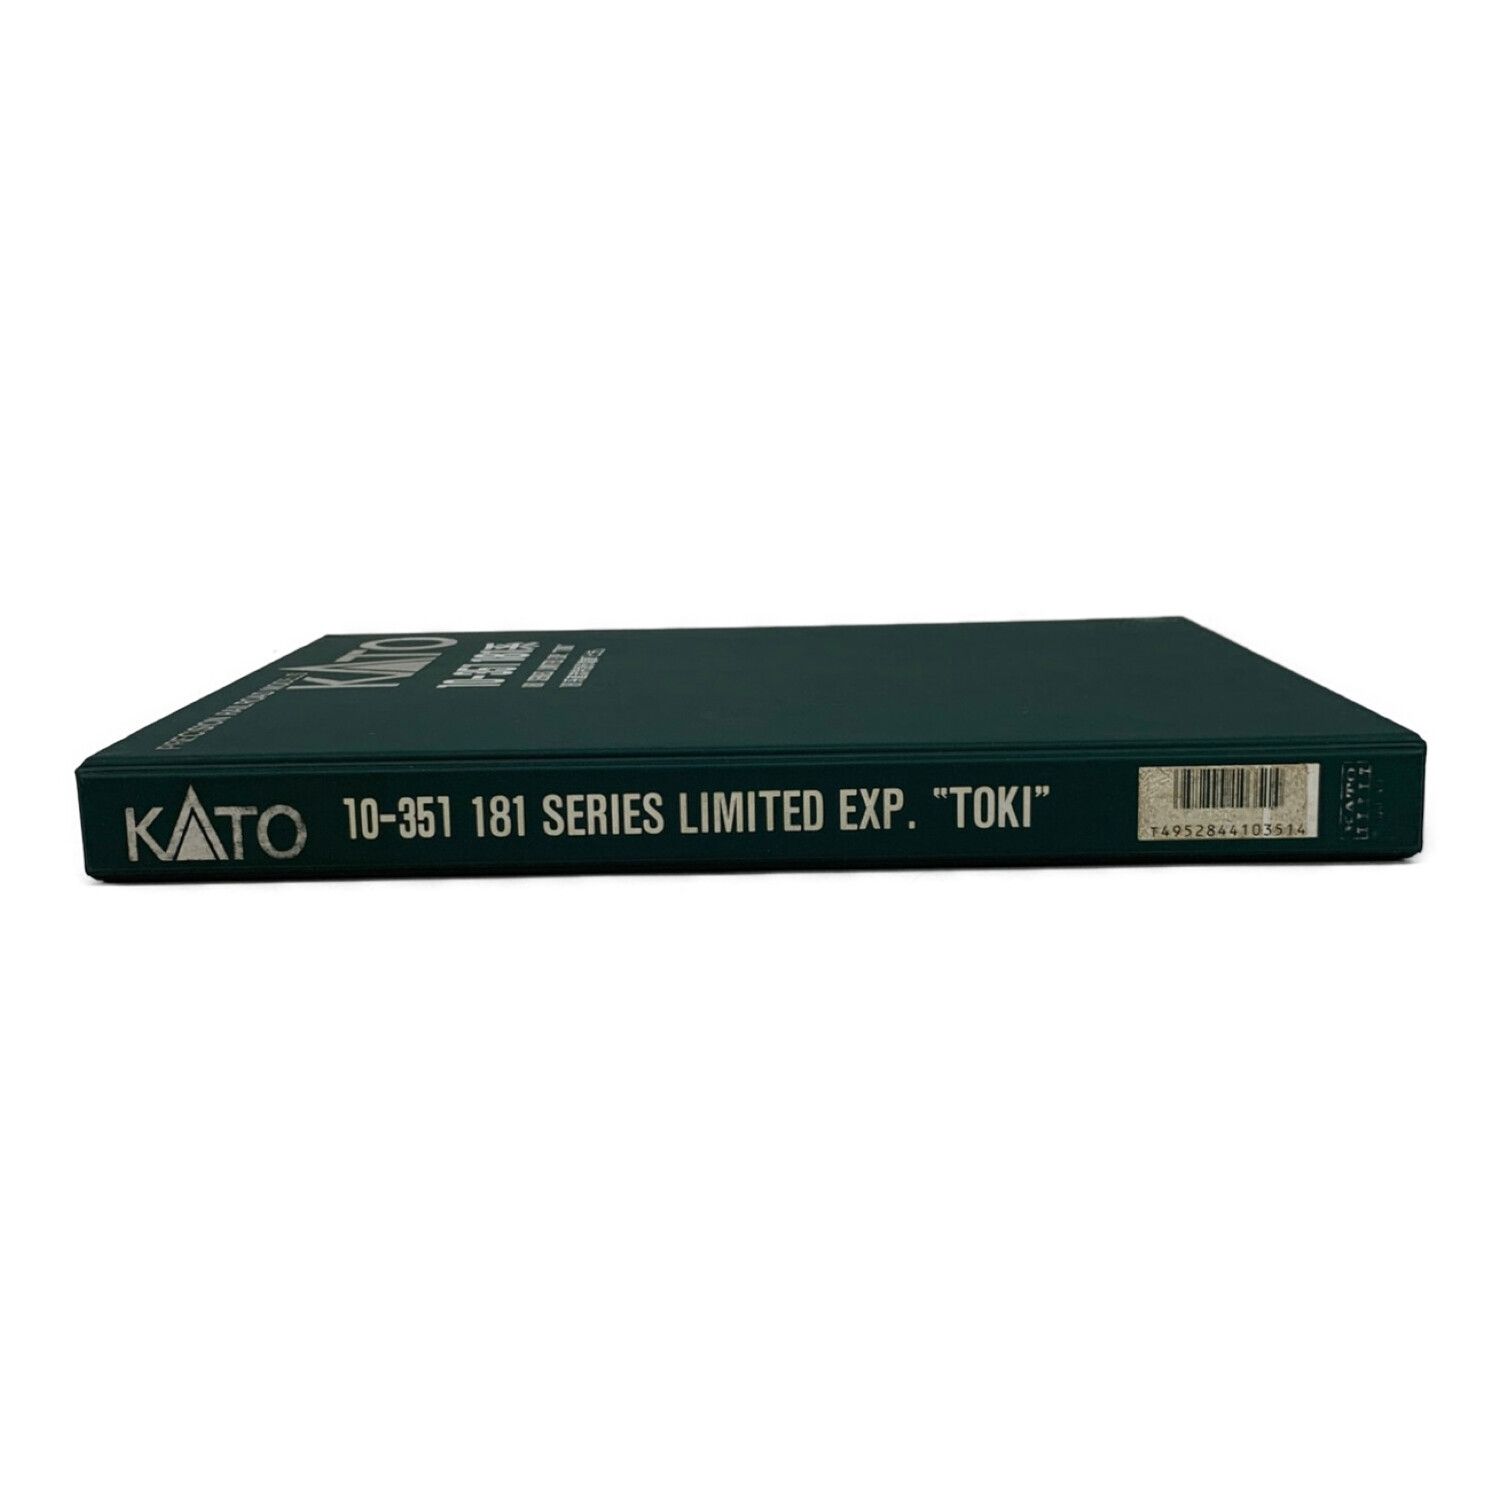 KATO (カトー) Nゲージ 10-351 181系直流特急形電車「とき」12両セット